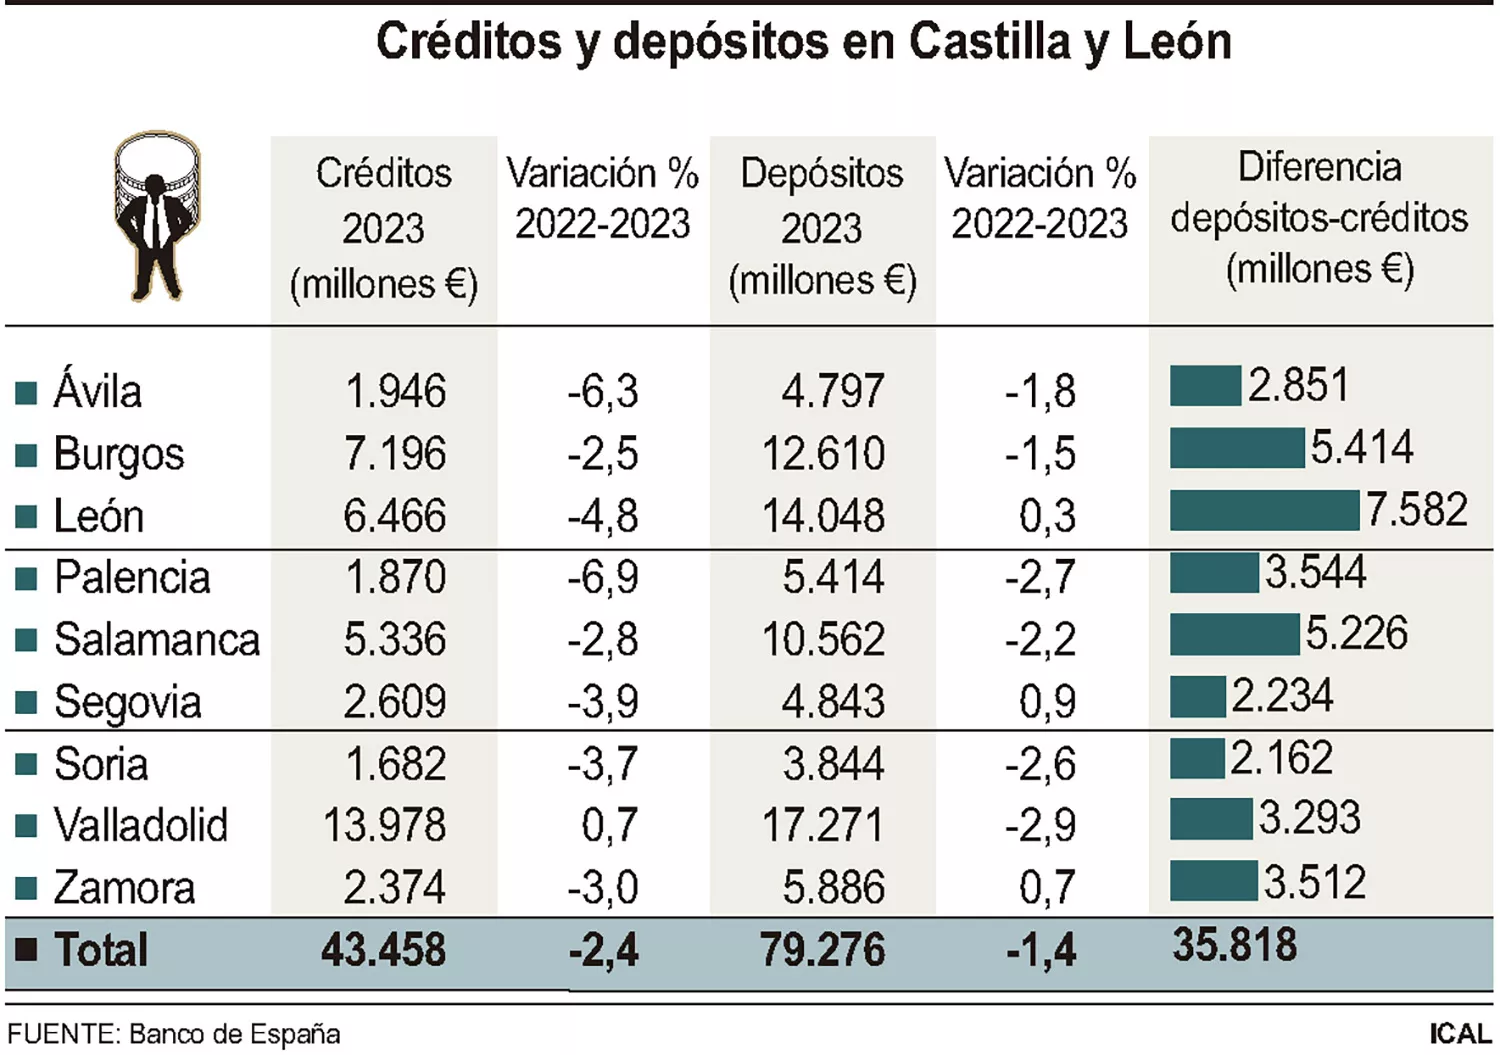 Grafico créditos y depósitos en CyL